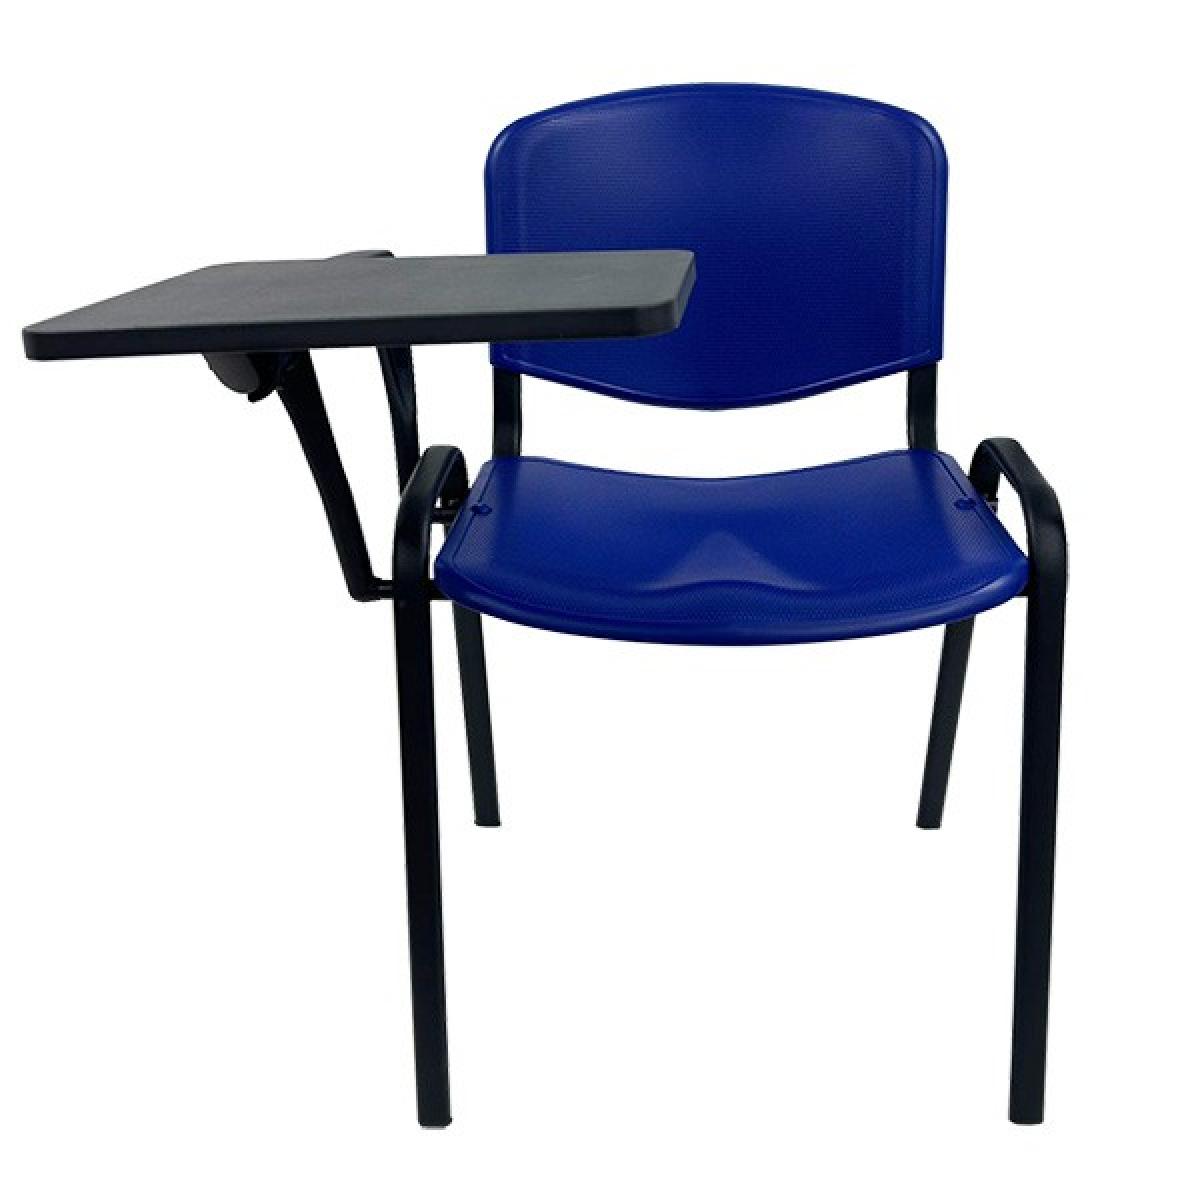 Silla NIZA con pala de escritura, asiento y respaldo en plástico azul